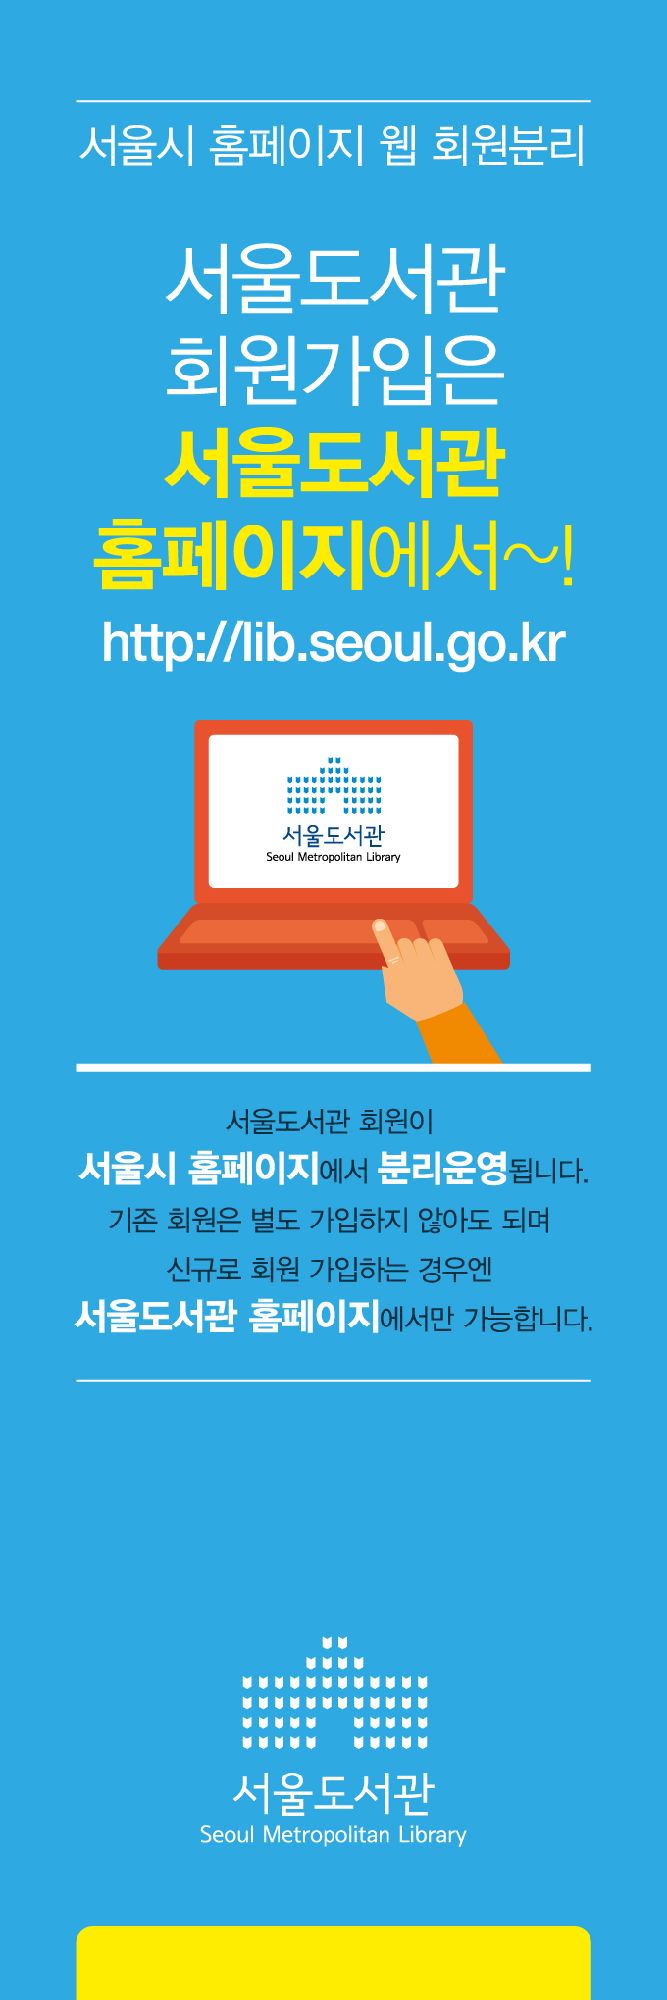 [공지] 서울도서관 홈페이지 웹 회원 분리 포스터